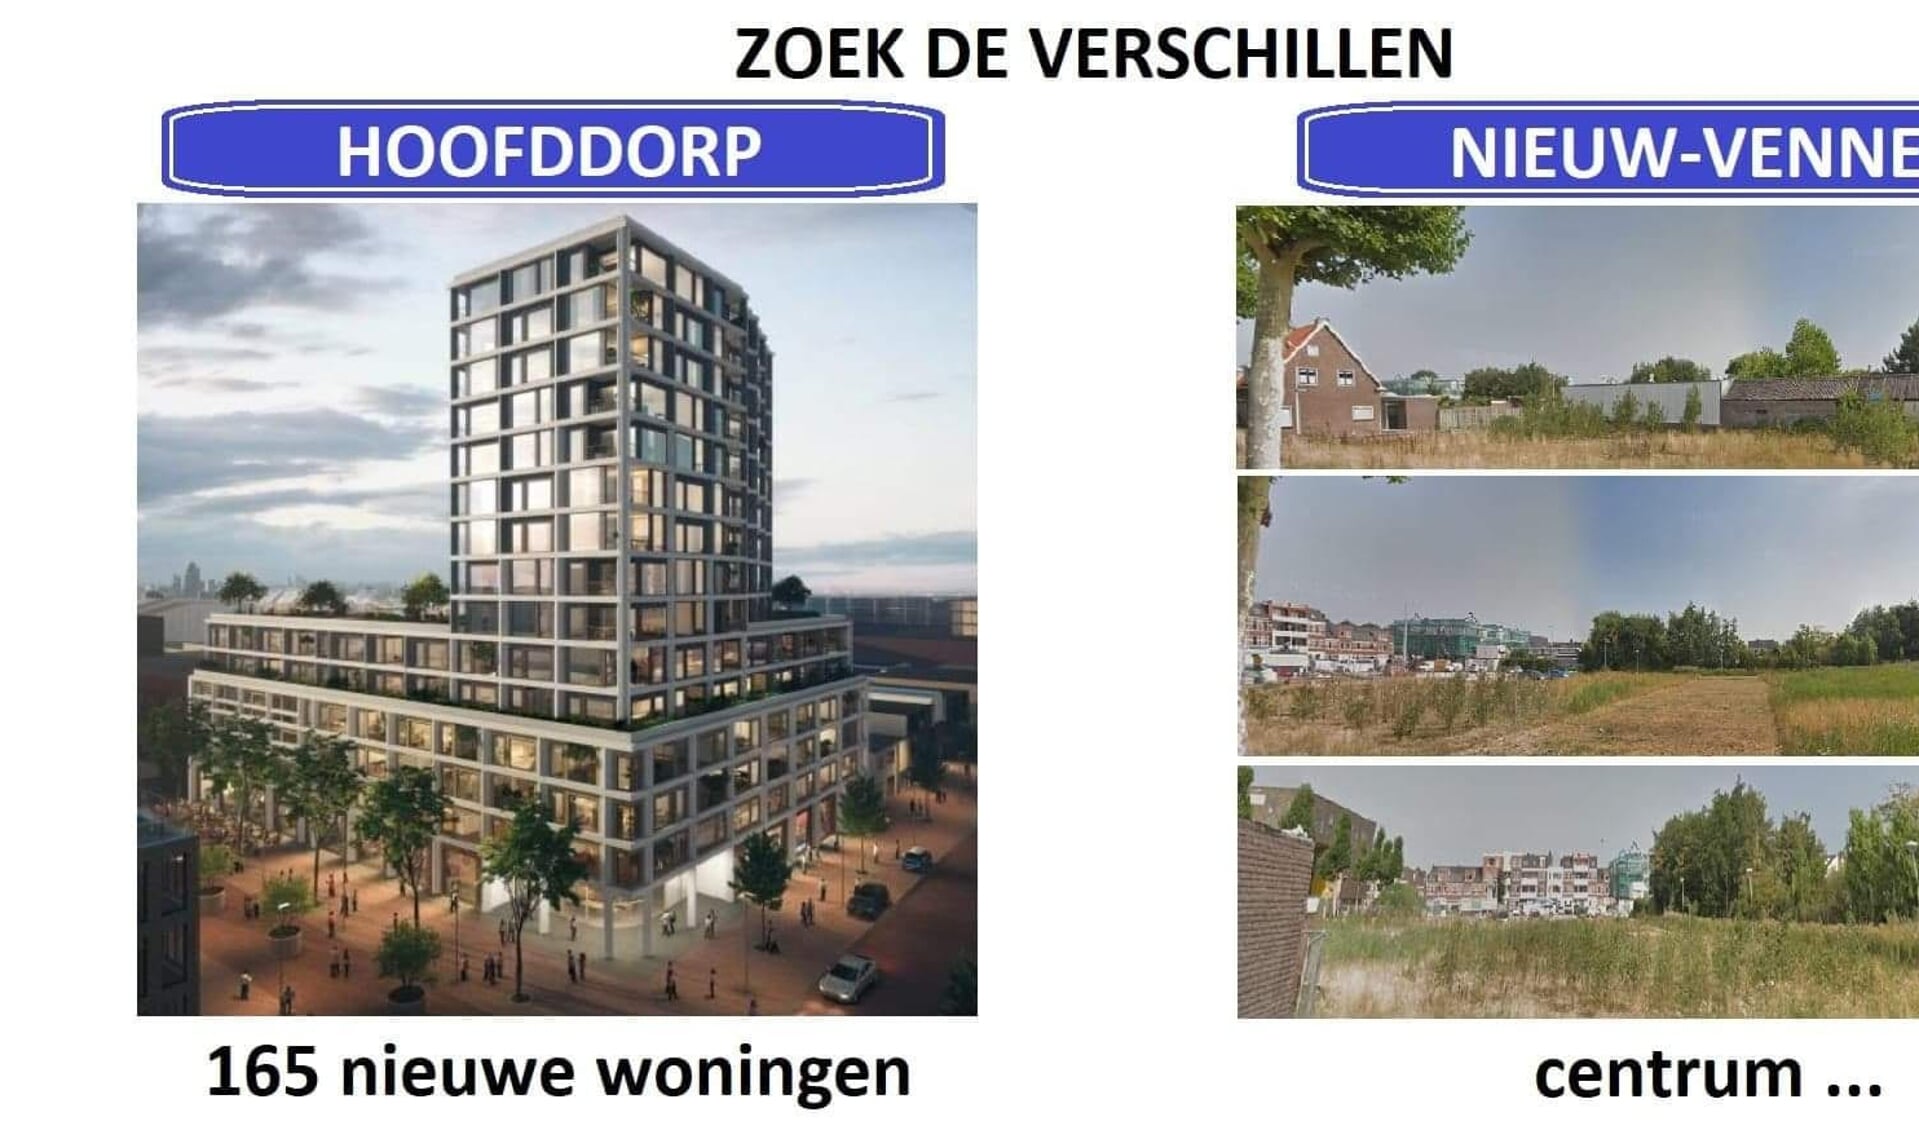 De frustratie In Nieuw-Vennep bij elk bouwplan in Hoofddorp is groot.